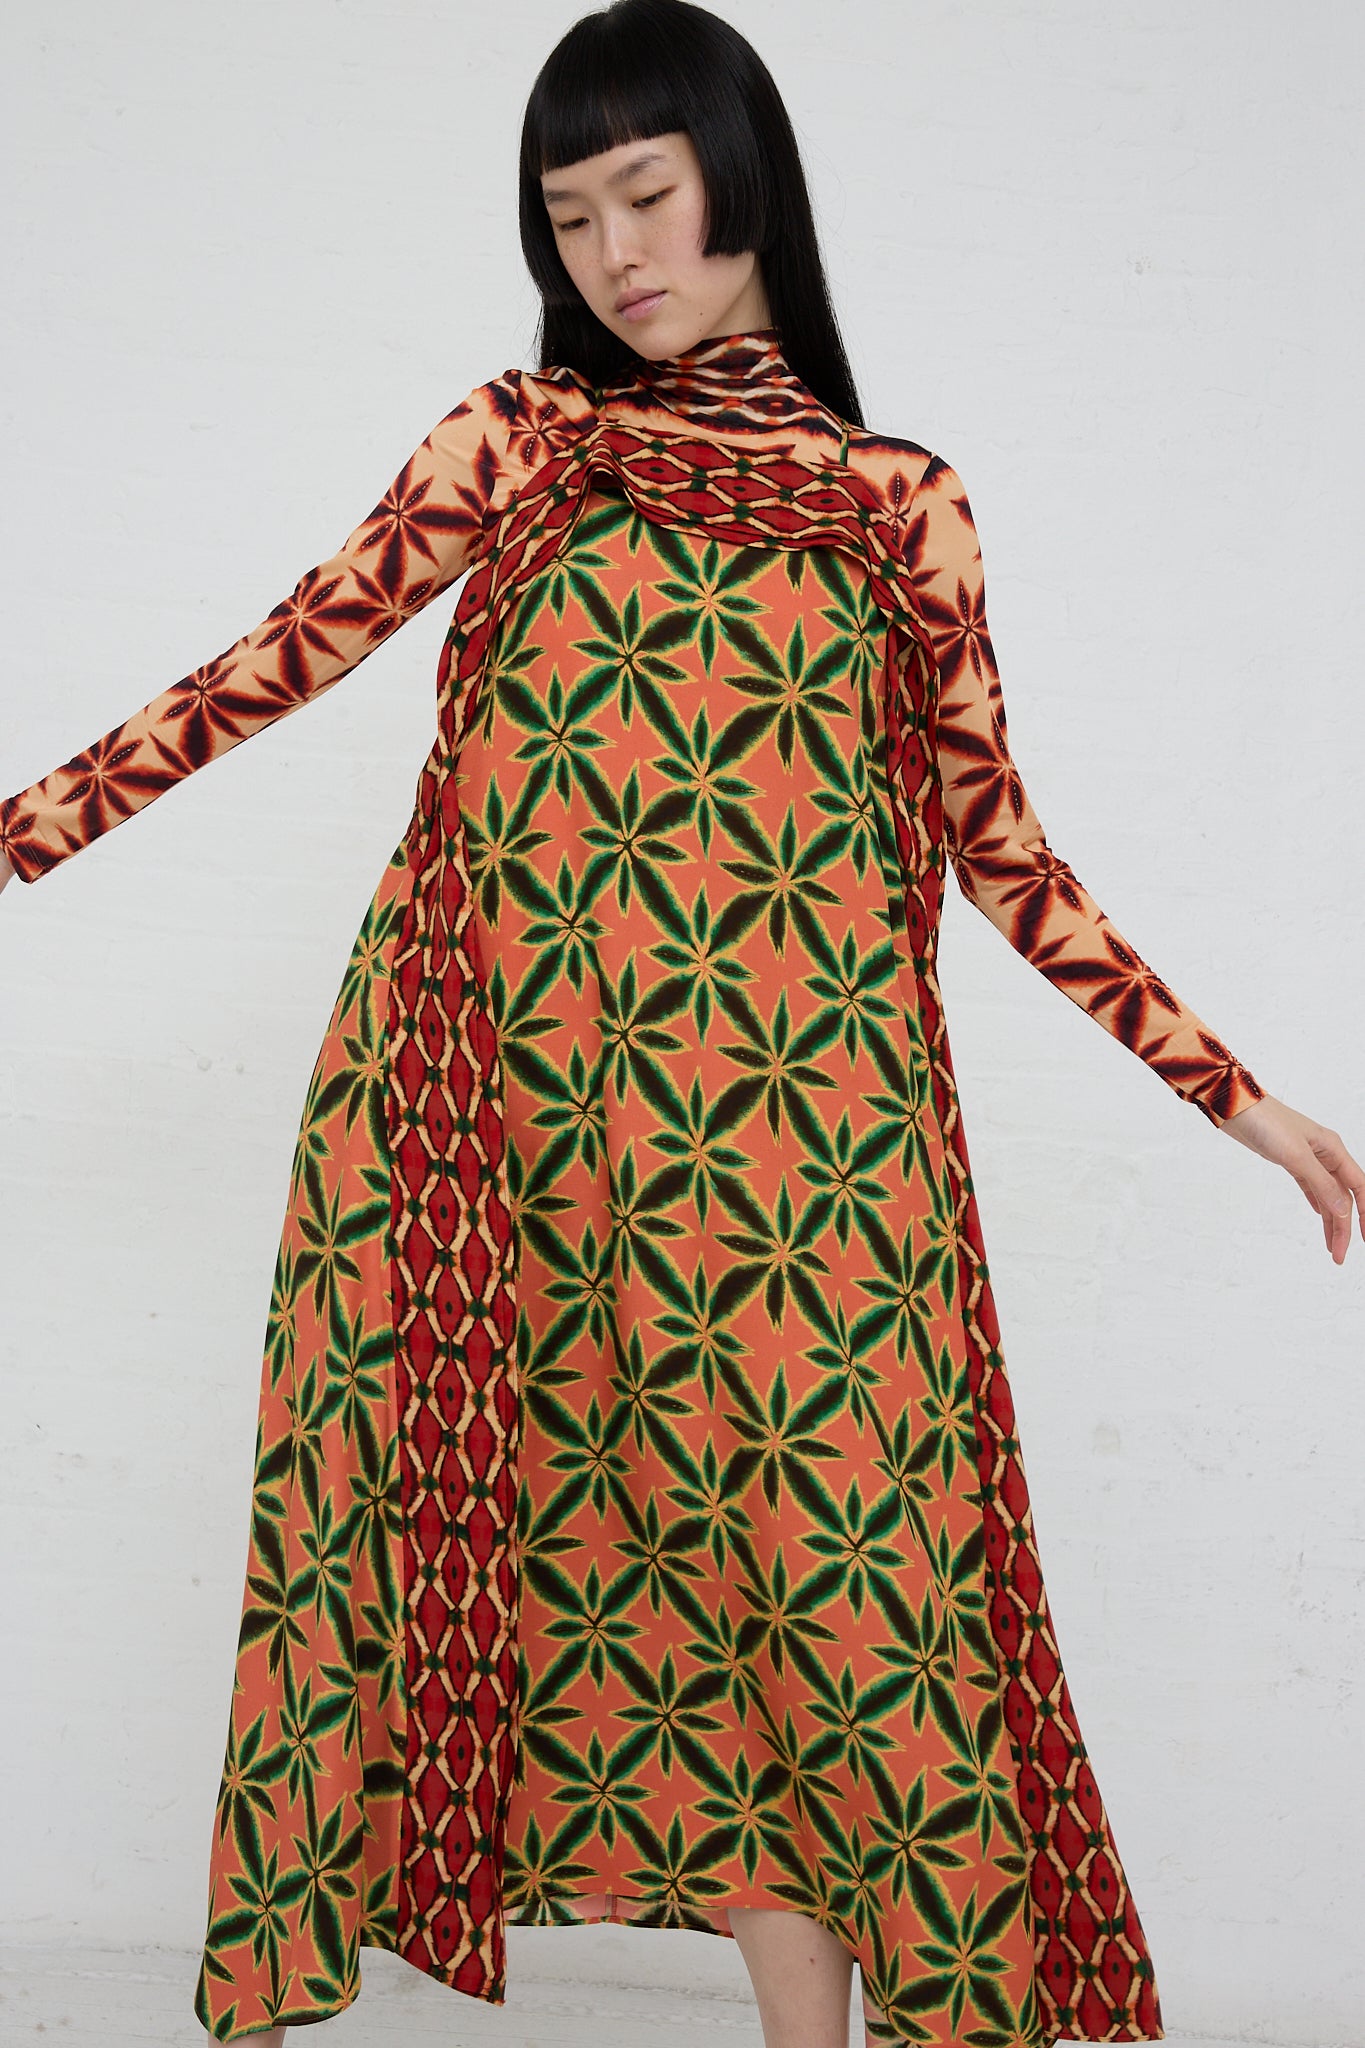 A woman in the Ulla Johnson Lily Dress in Fresco, a square neckline midi dress made of shibori printed satin-back crepe in orange and green.